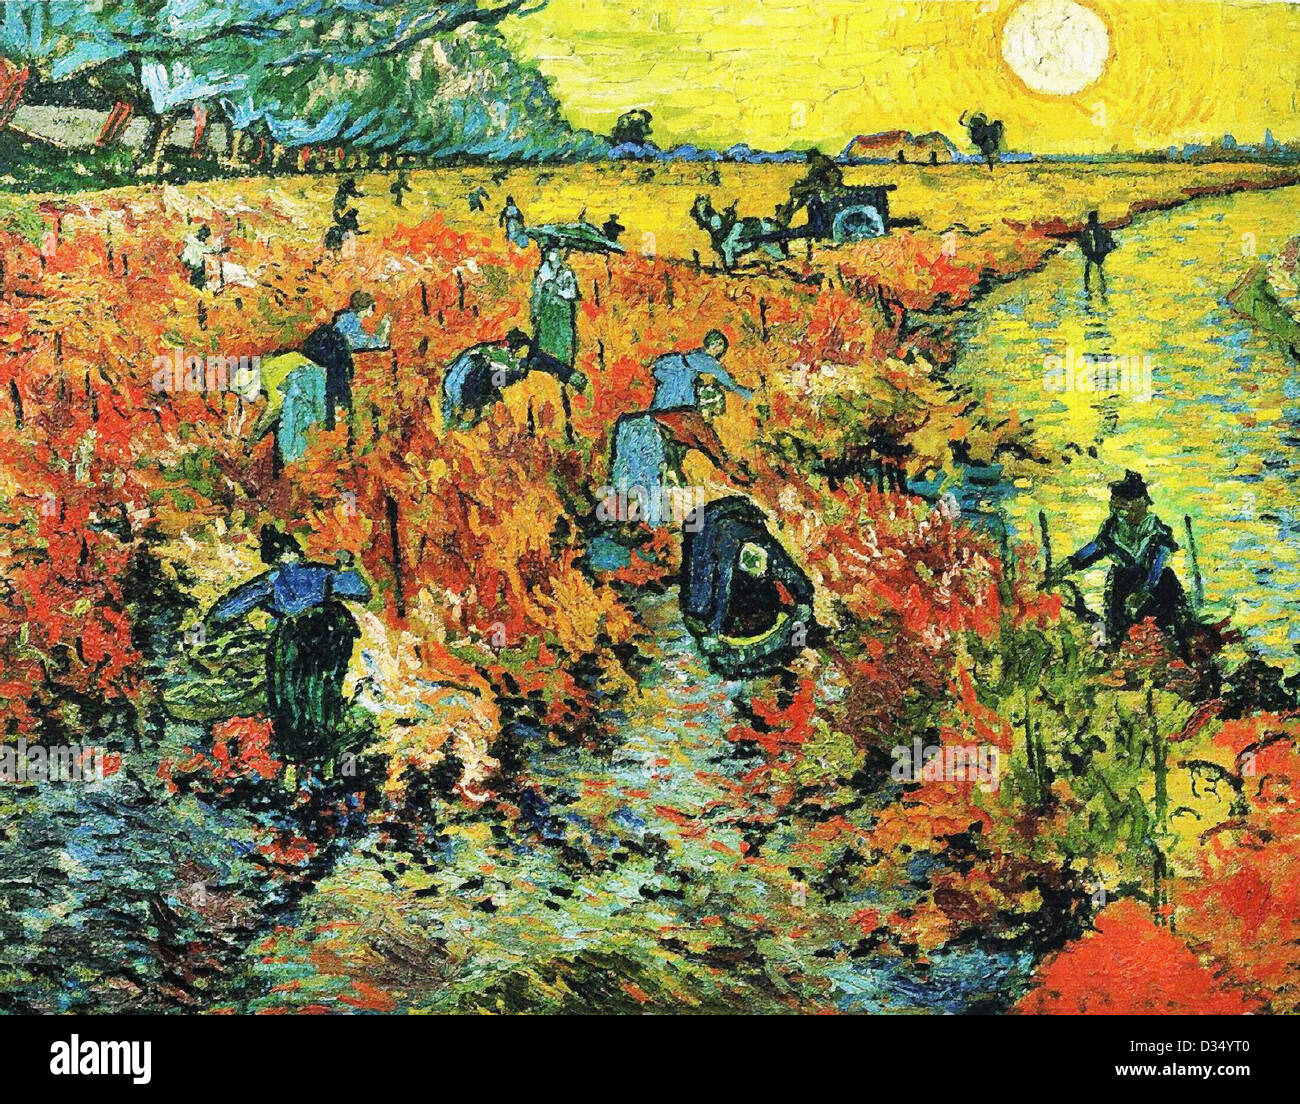 Vincent van Gogh, Vignes Rouges d'Arles. 1888. Le réalisme. Huile sur toile. Musée des Beaux-Arts Pouchkine, Moscou, Russie. Banque D'Images